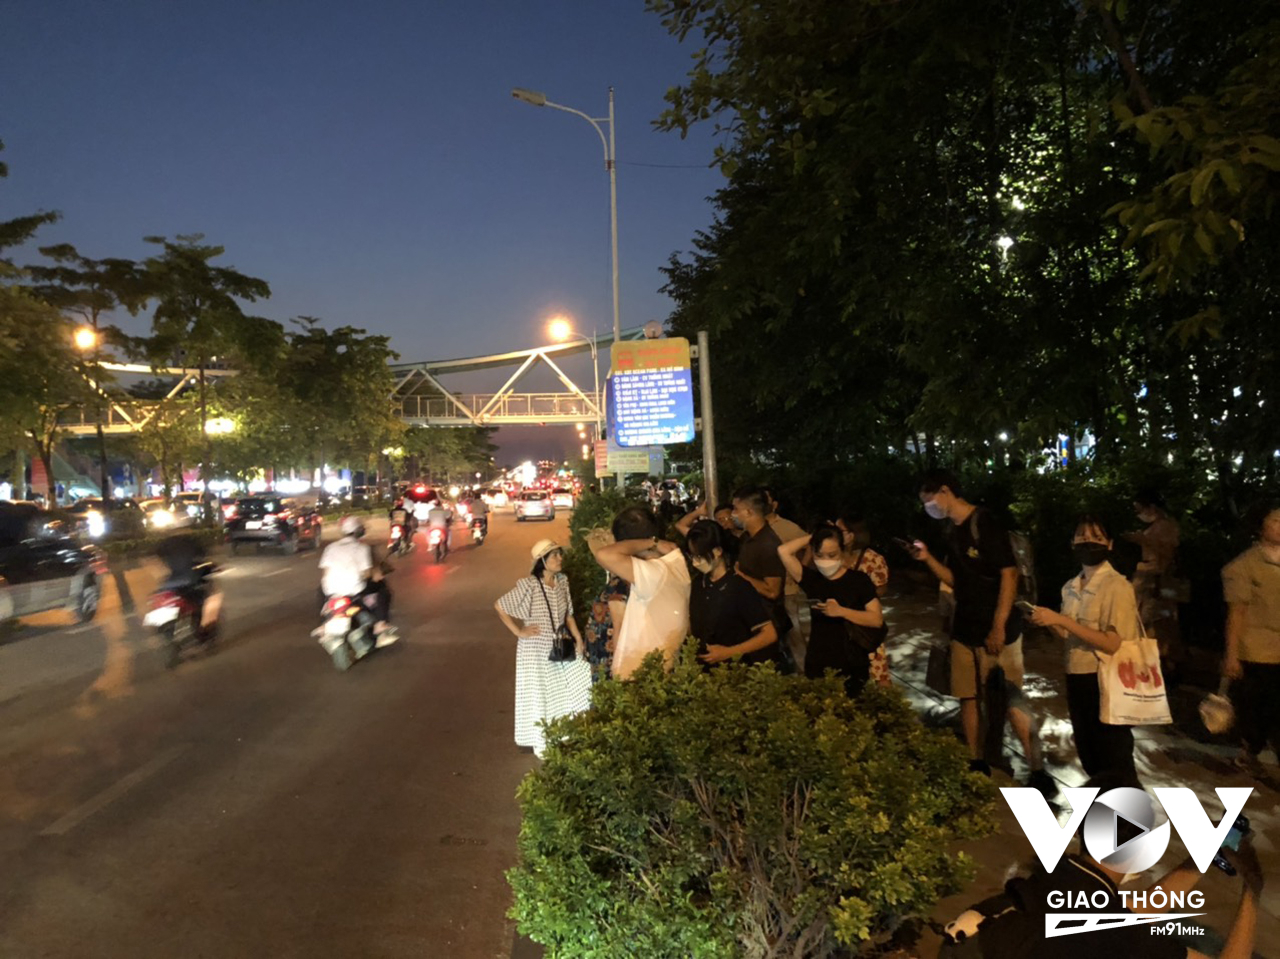 Nhiều người bắt xe tại đường Cổ Linh đoạn qua EAON mall Long Biên hướng đi cầu Thanh Trì, cao tốc Hà Nội - Hải Phòng - Ảnh: Nguyễn Minh